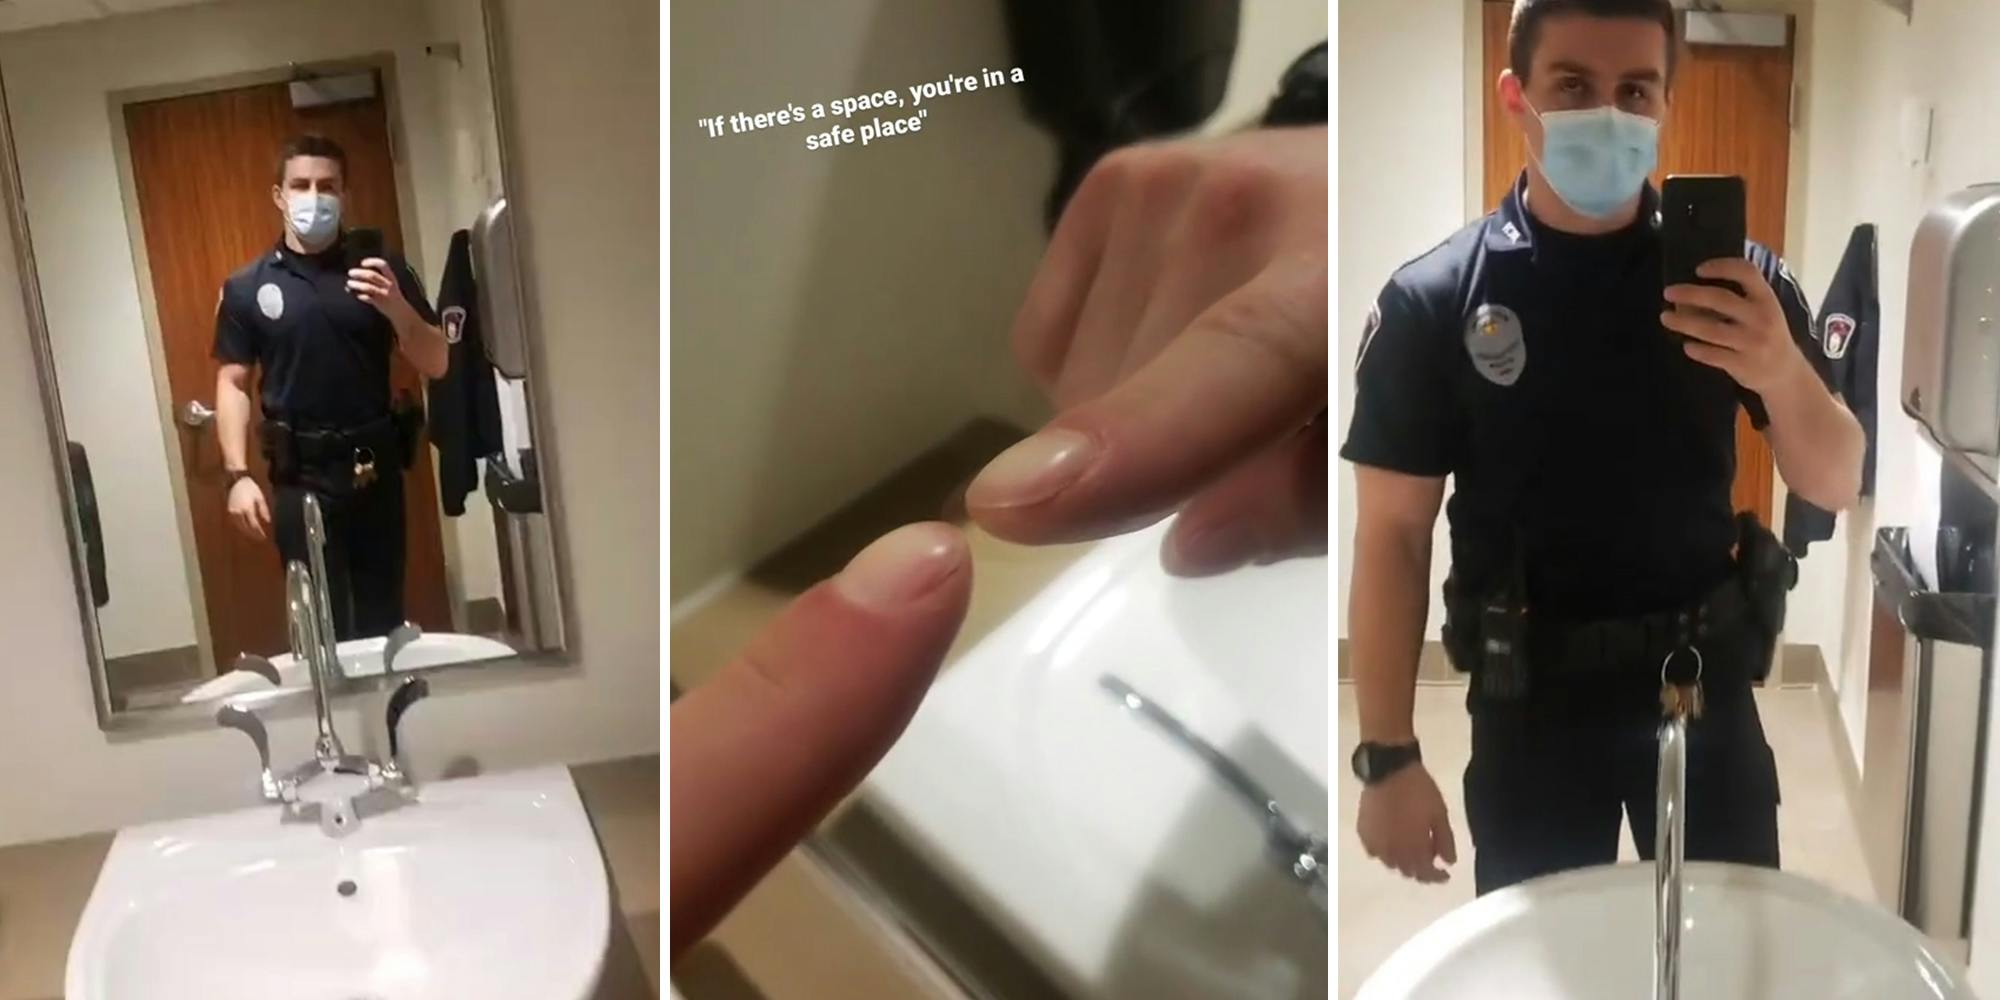 شرطي يكشف عن خدعة كشف المرآة في اتجاهين